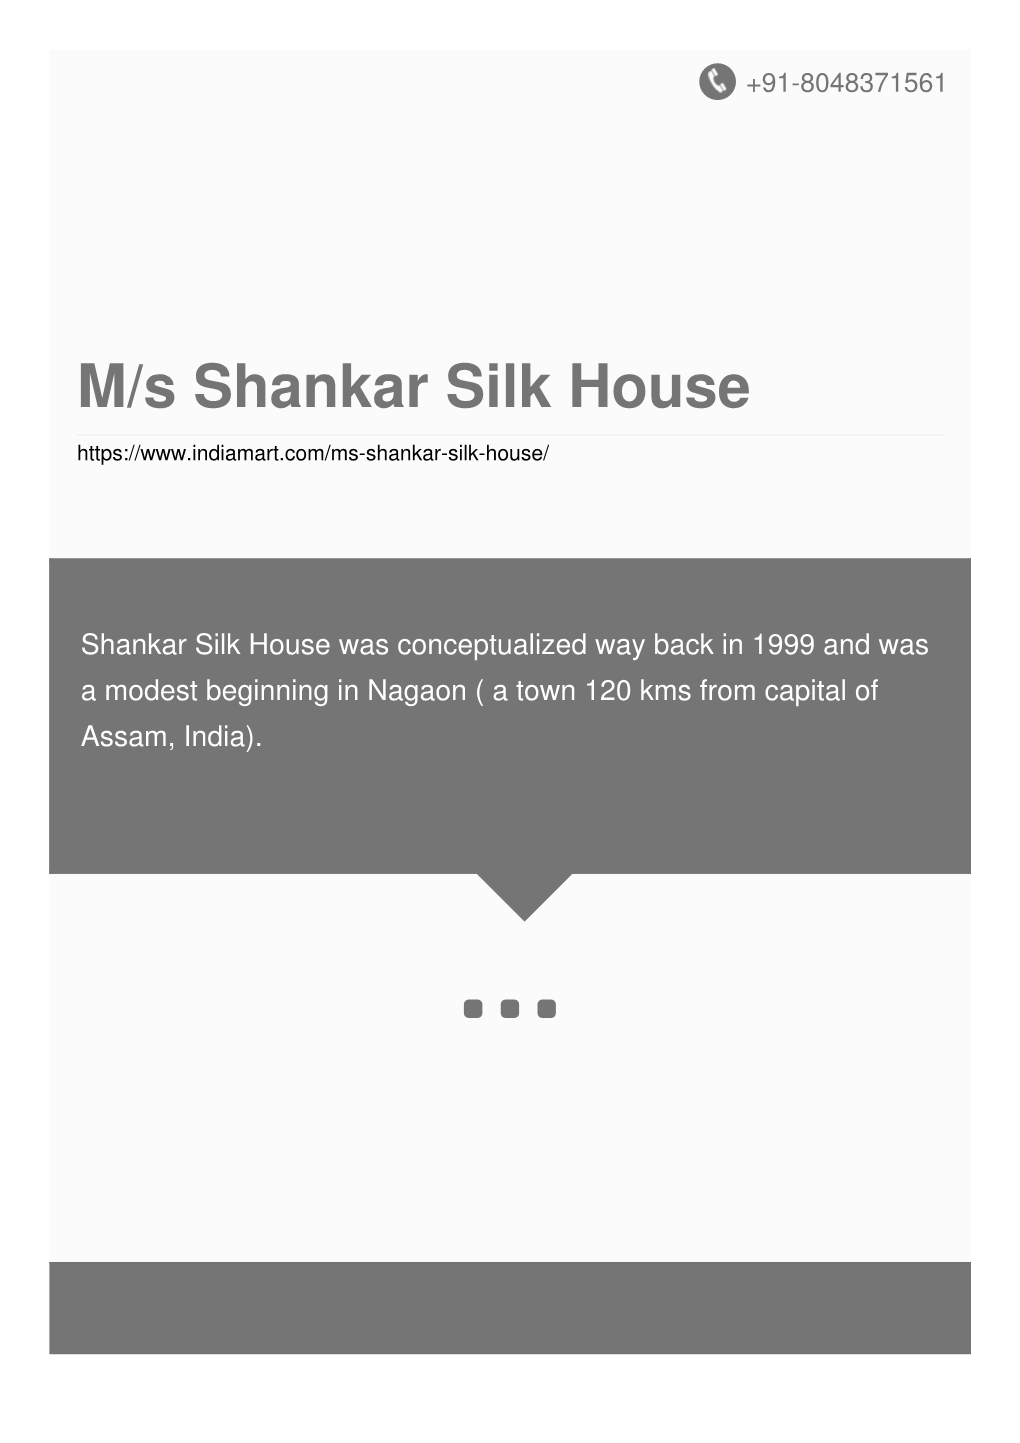 M/S Shankar Silk House